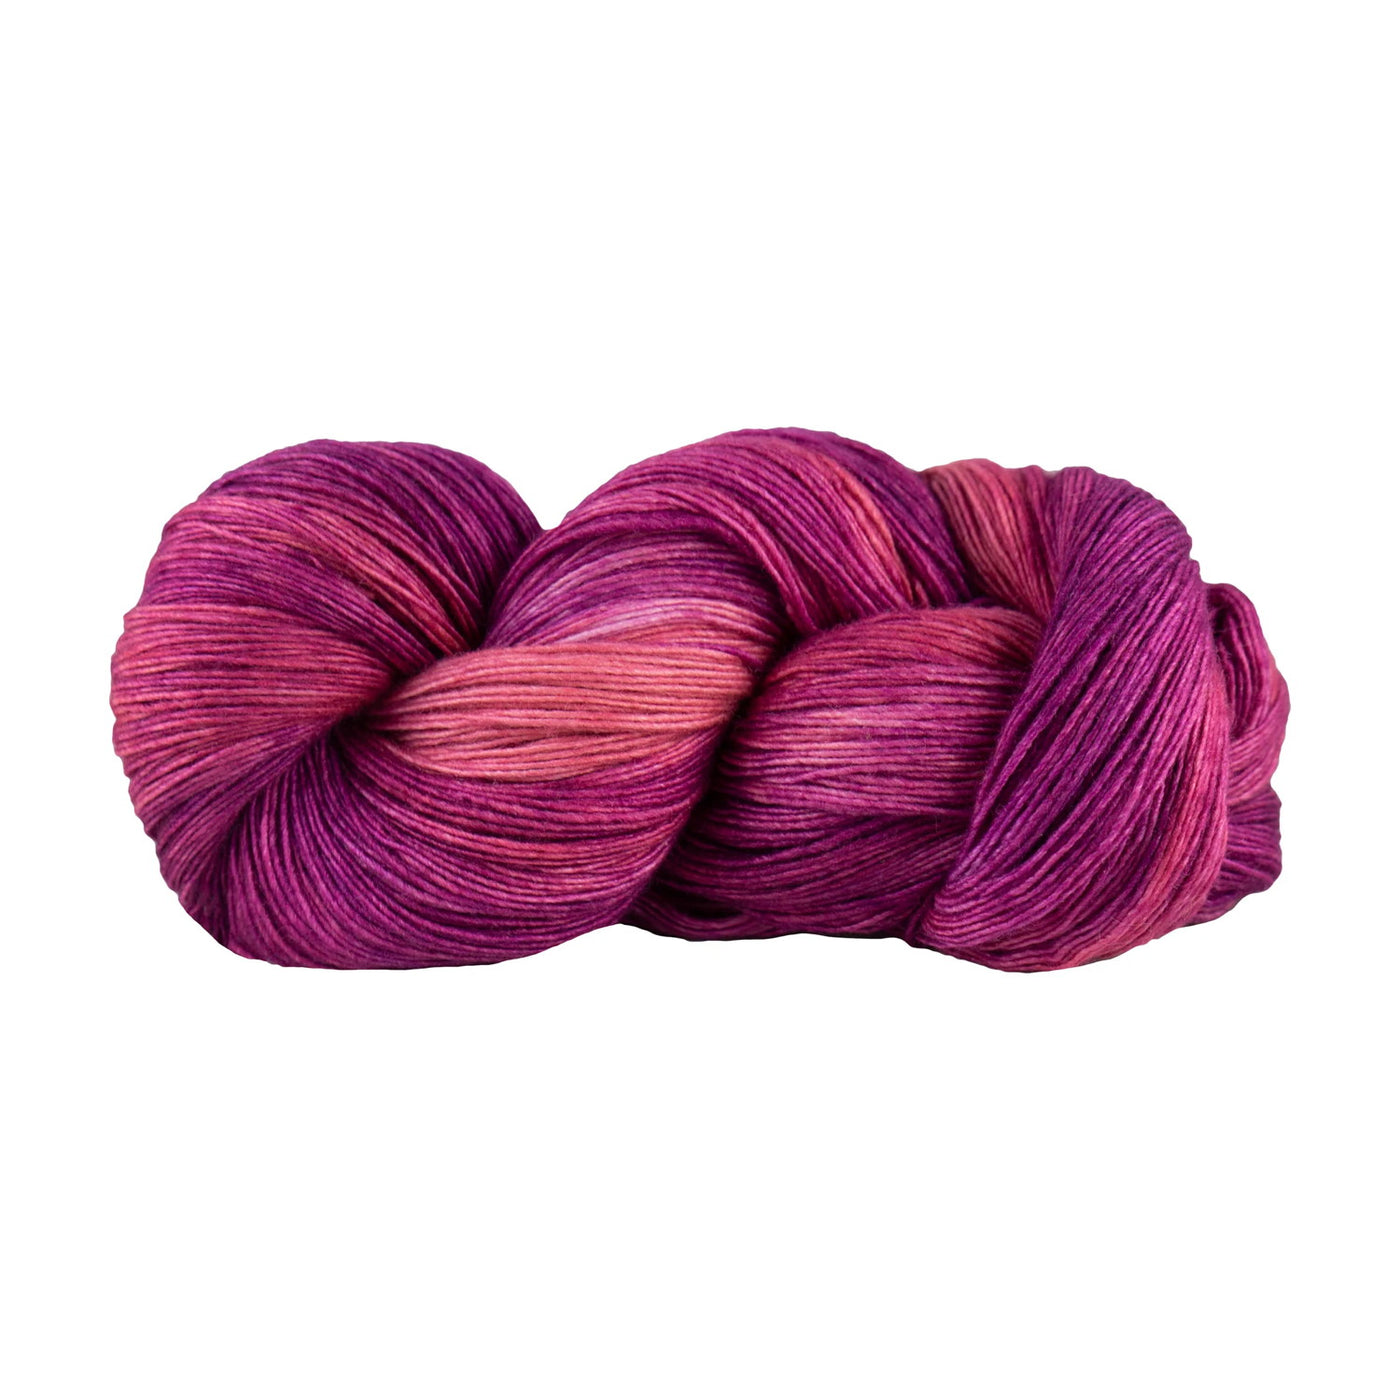 Fino - Brocade 70% Merino Wool / 30% Silk